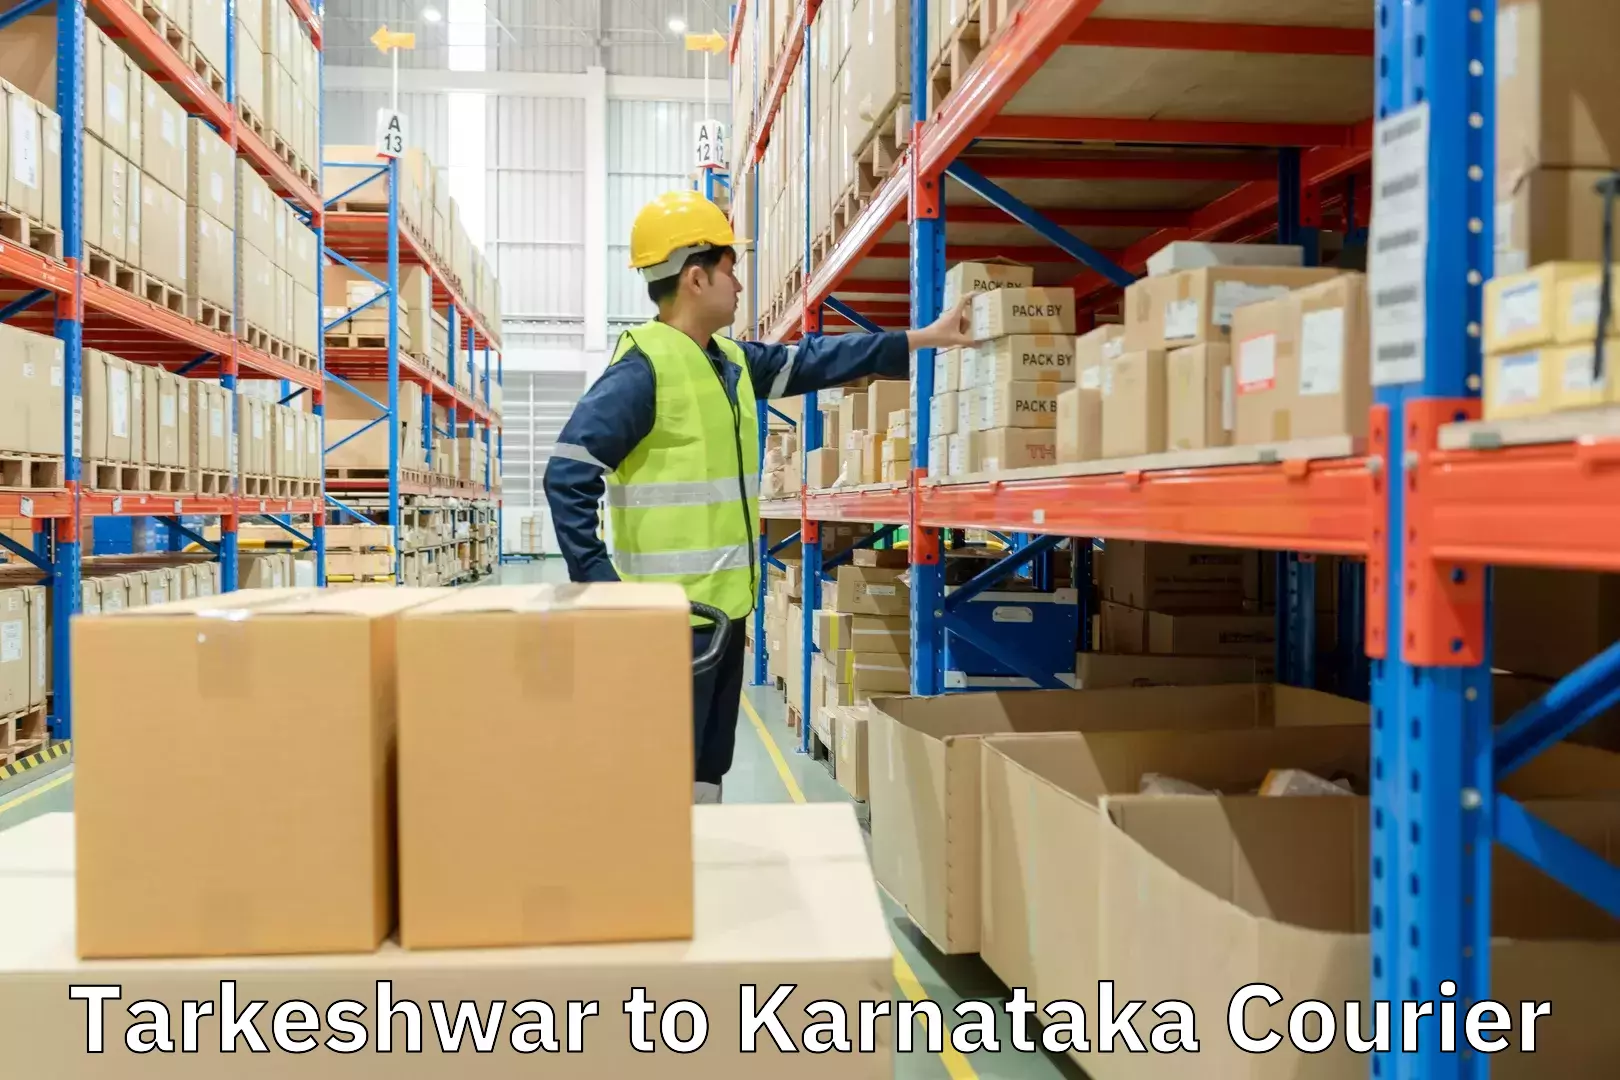 Quick booking process Tarkeshwar to Karnataka